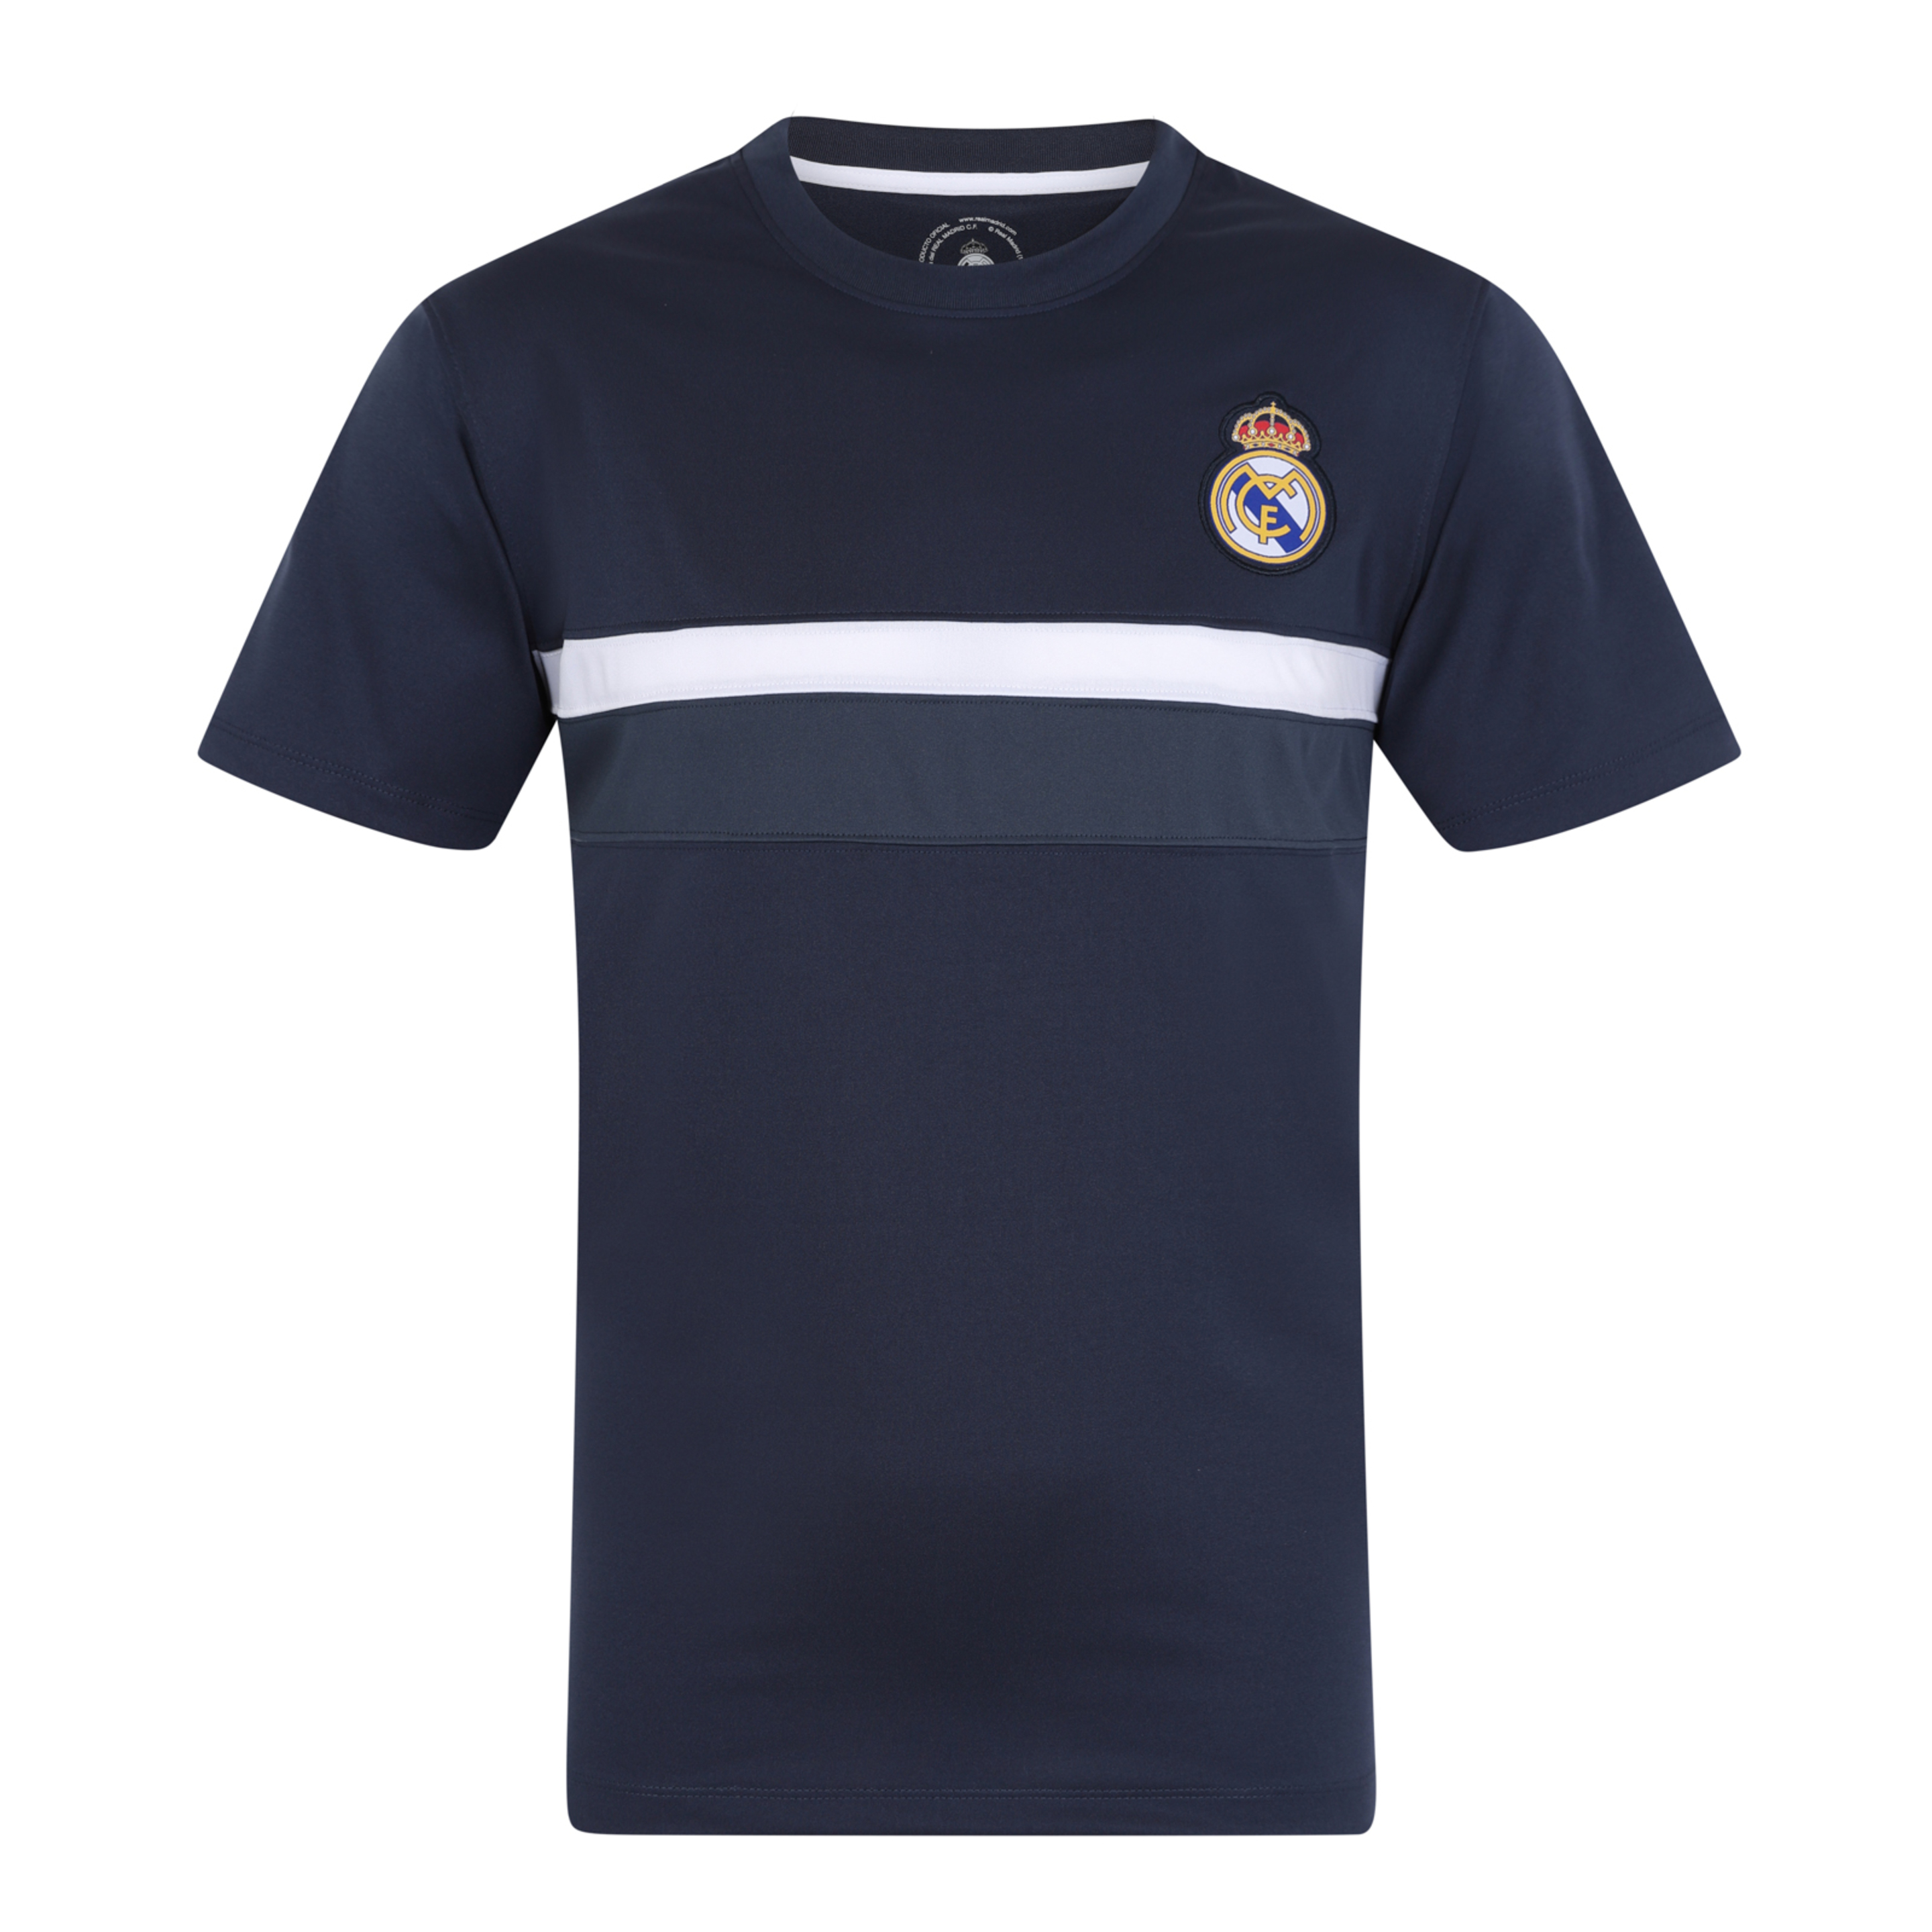 Real Madrid - Camiseta Oficial Entrenamiento Poliéster - Niño - Azul Marino Cuello De Pico - 10 Años